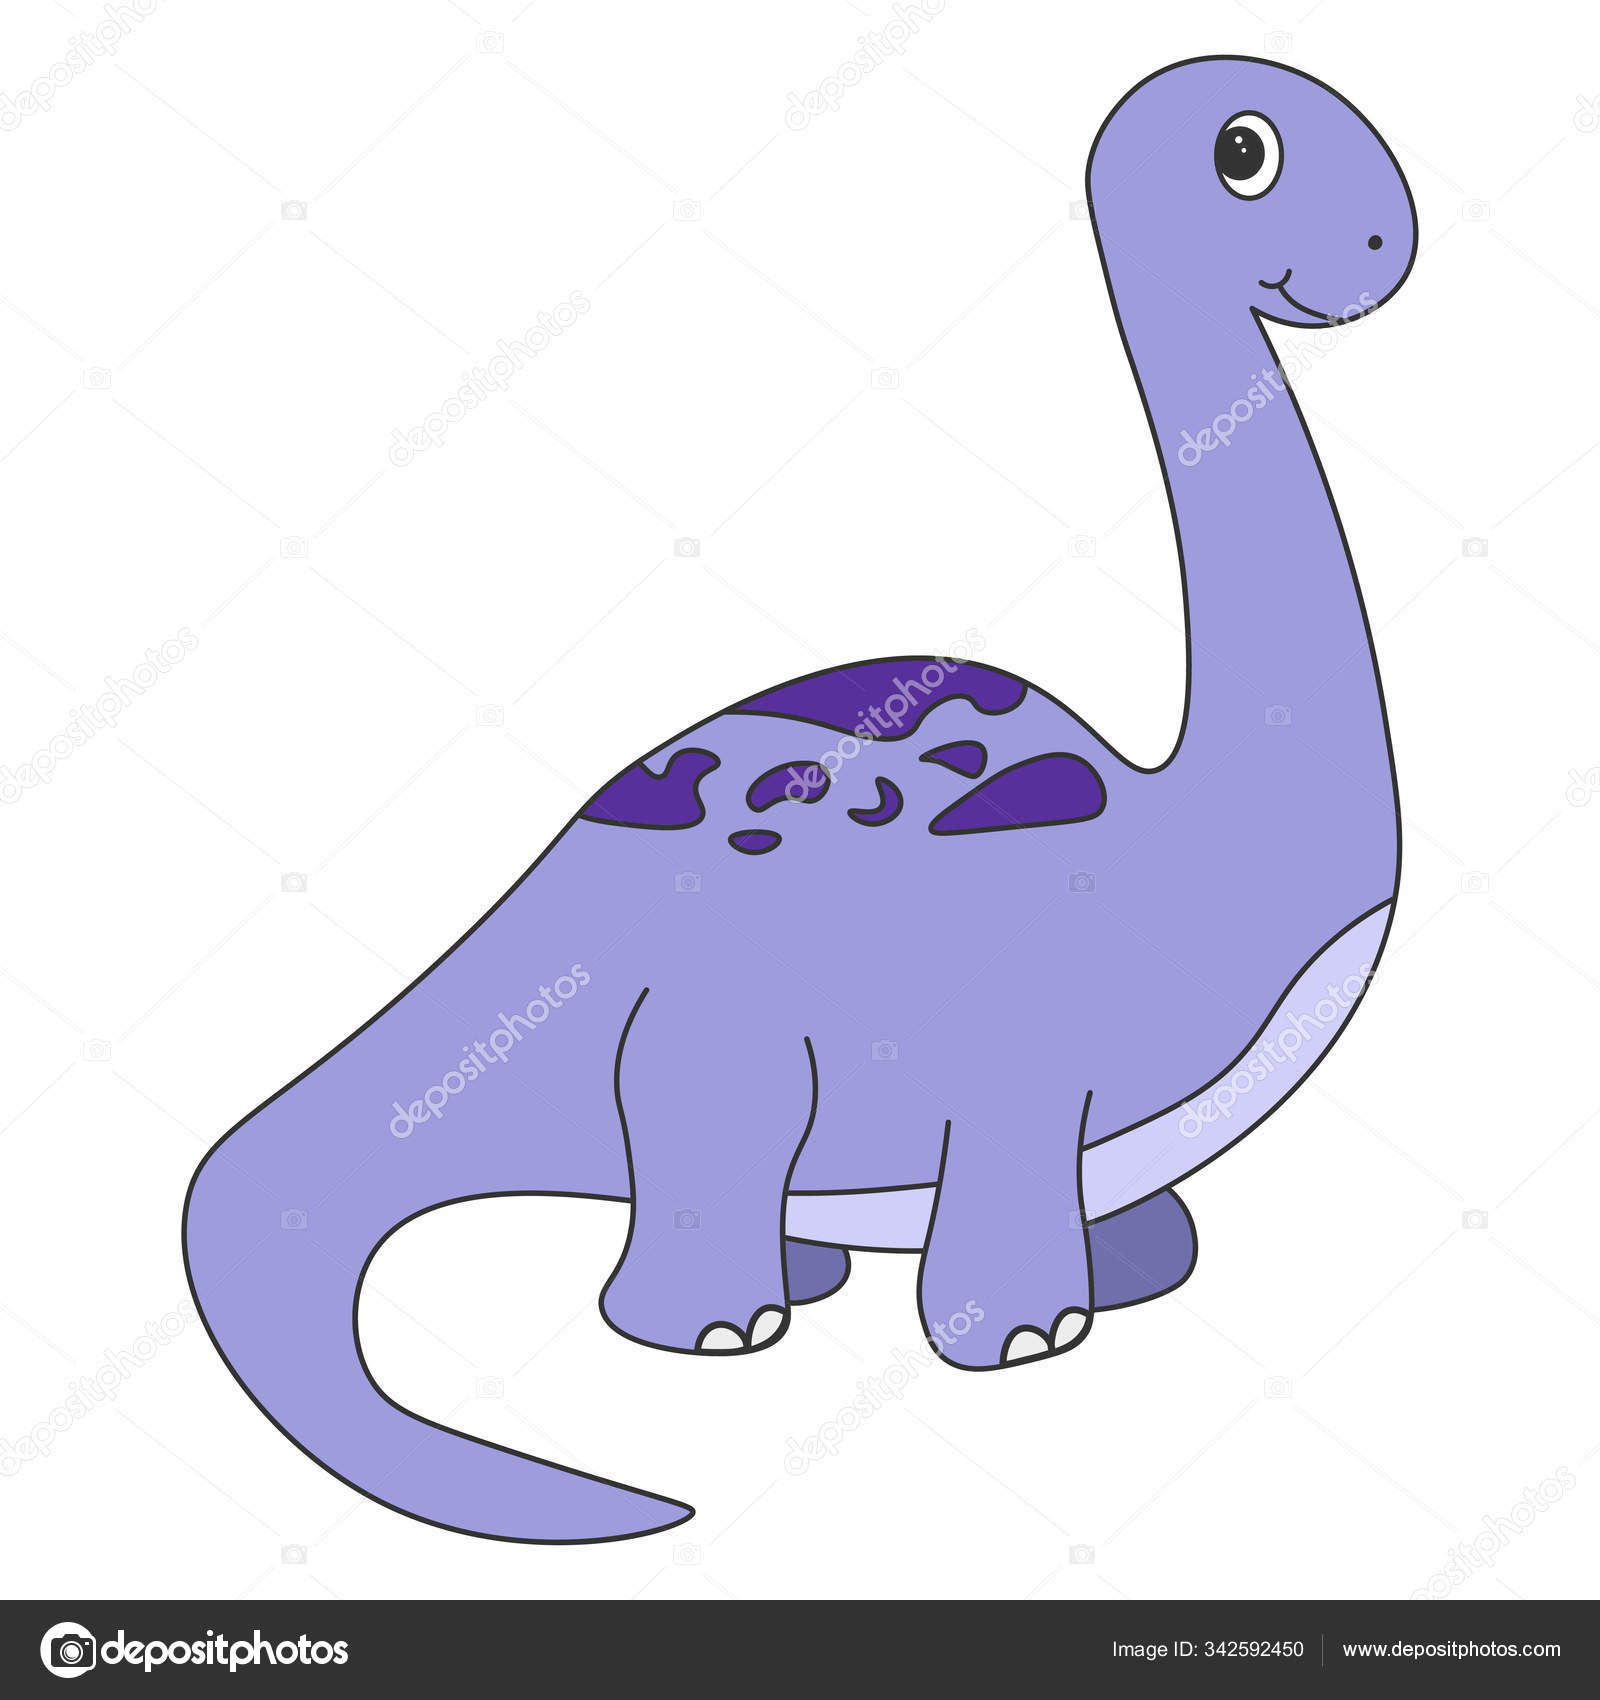 Desenhos animados do dinossauro braquiossauro imagem vetorial de  fotostock32© 342592450